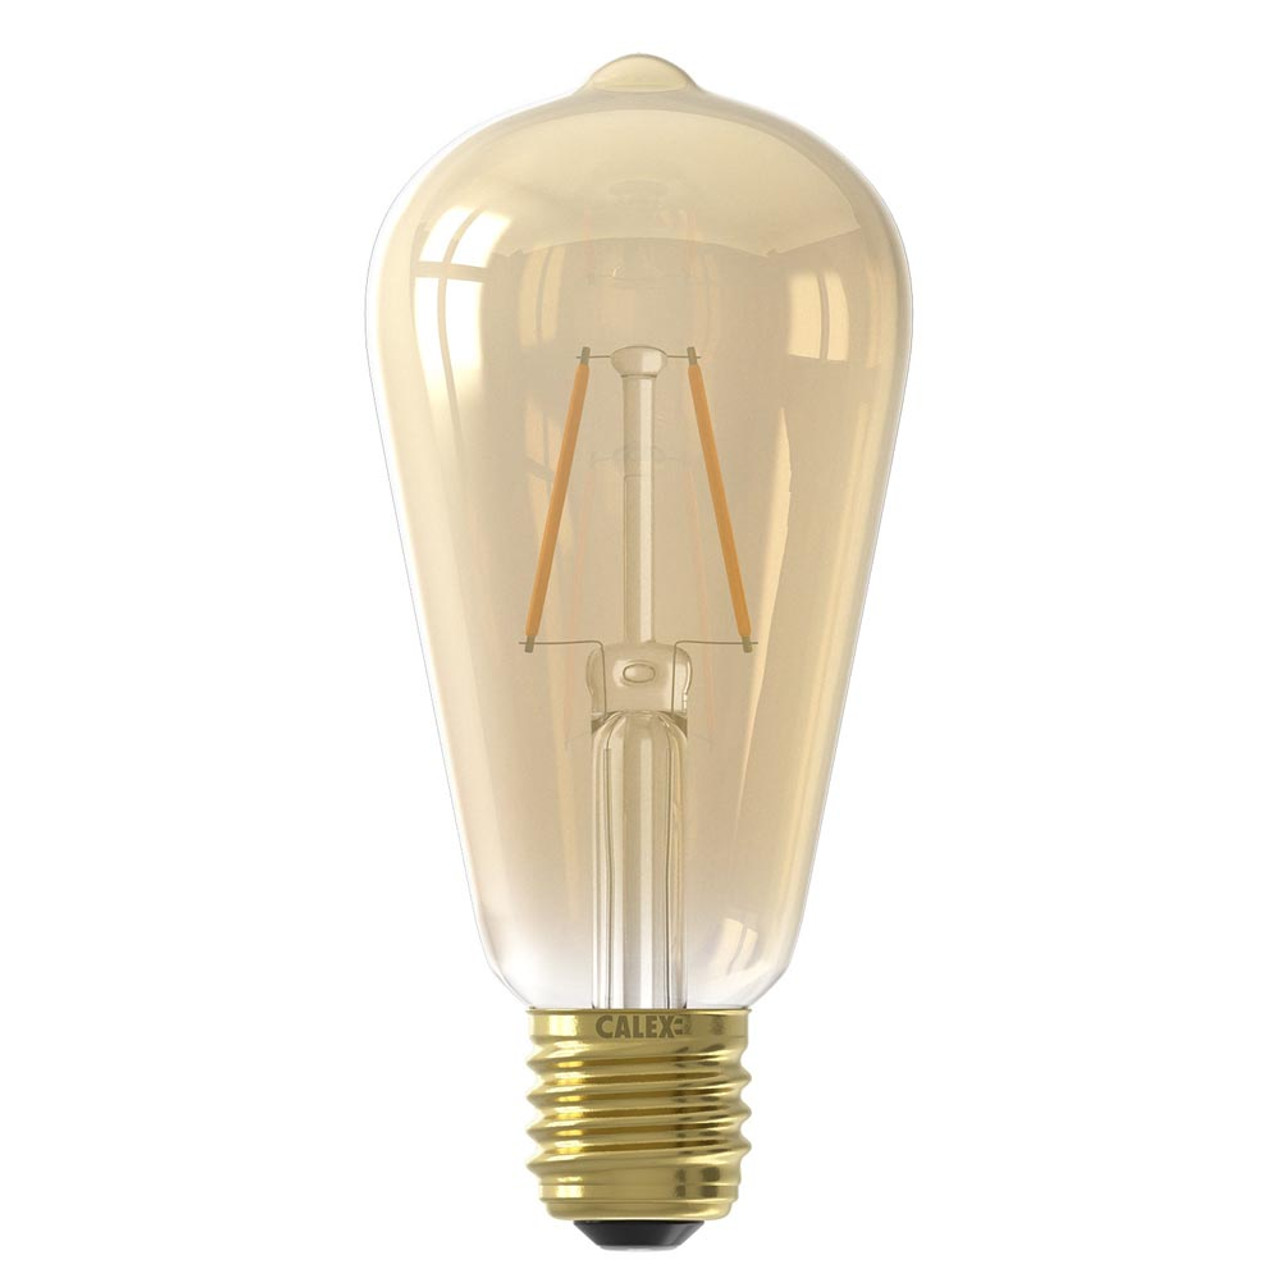 Calex LED Full Glass Long Filament Rustik Lamp 240V 2W E27 ST64 Gold 2100K